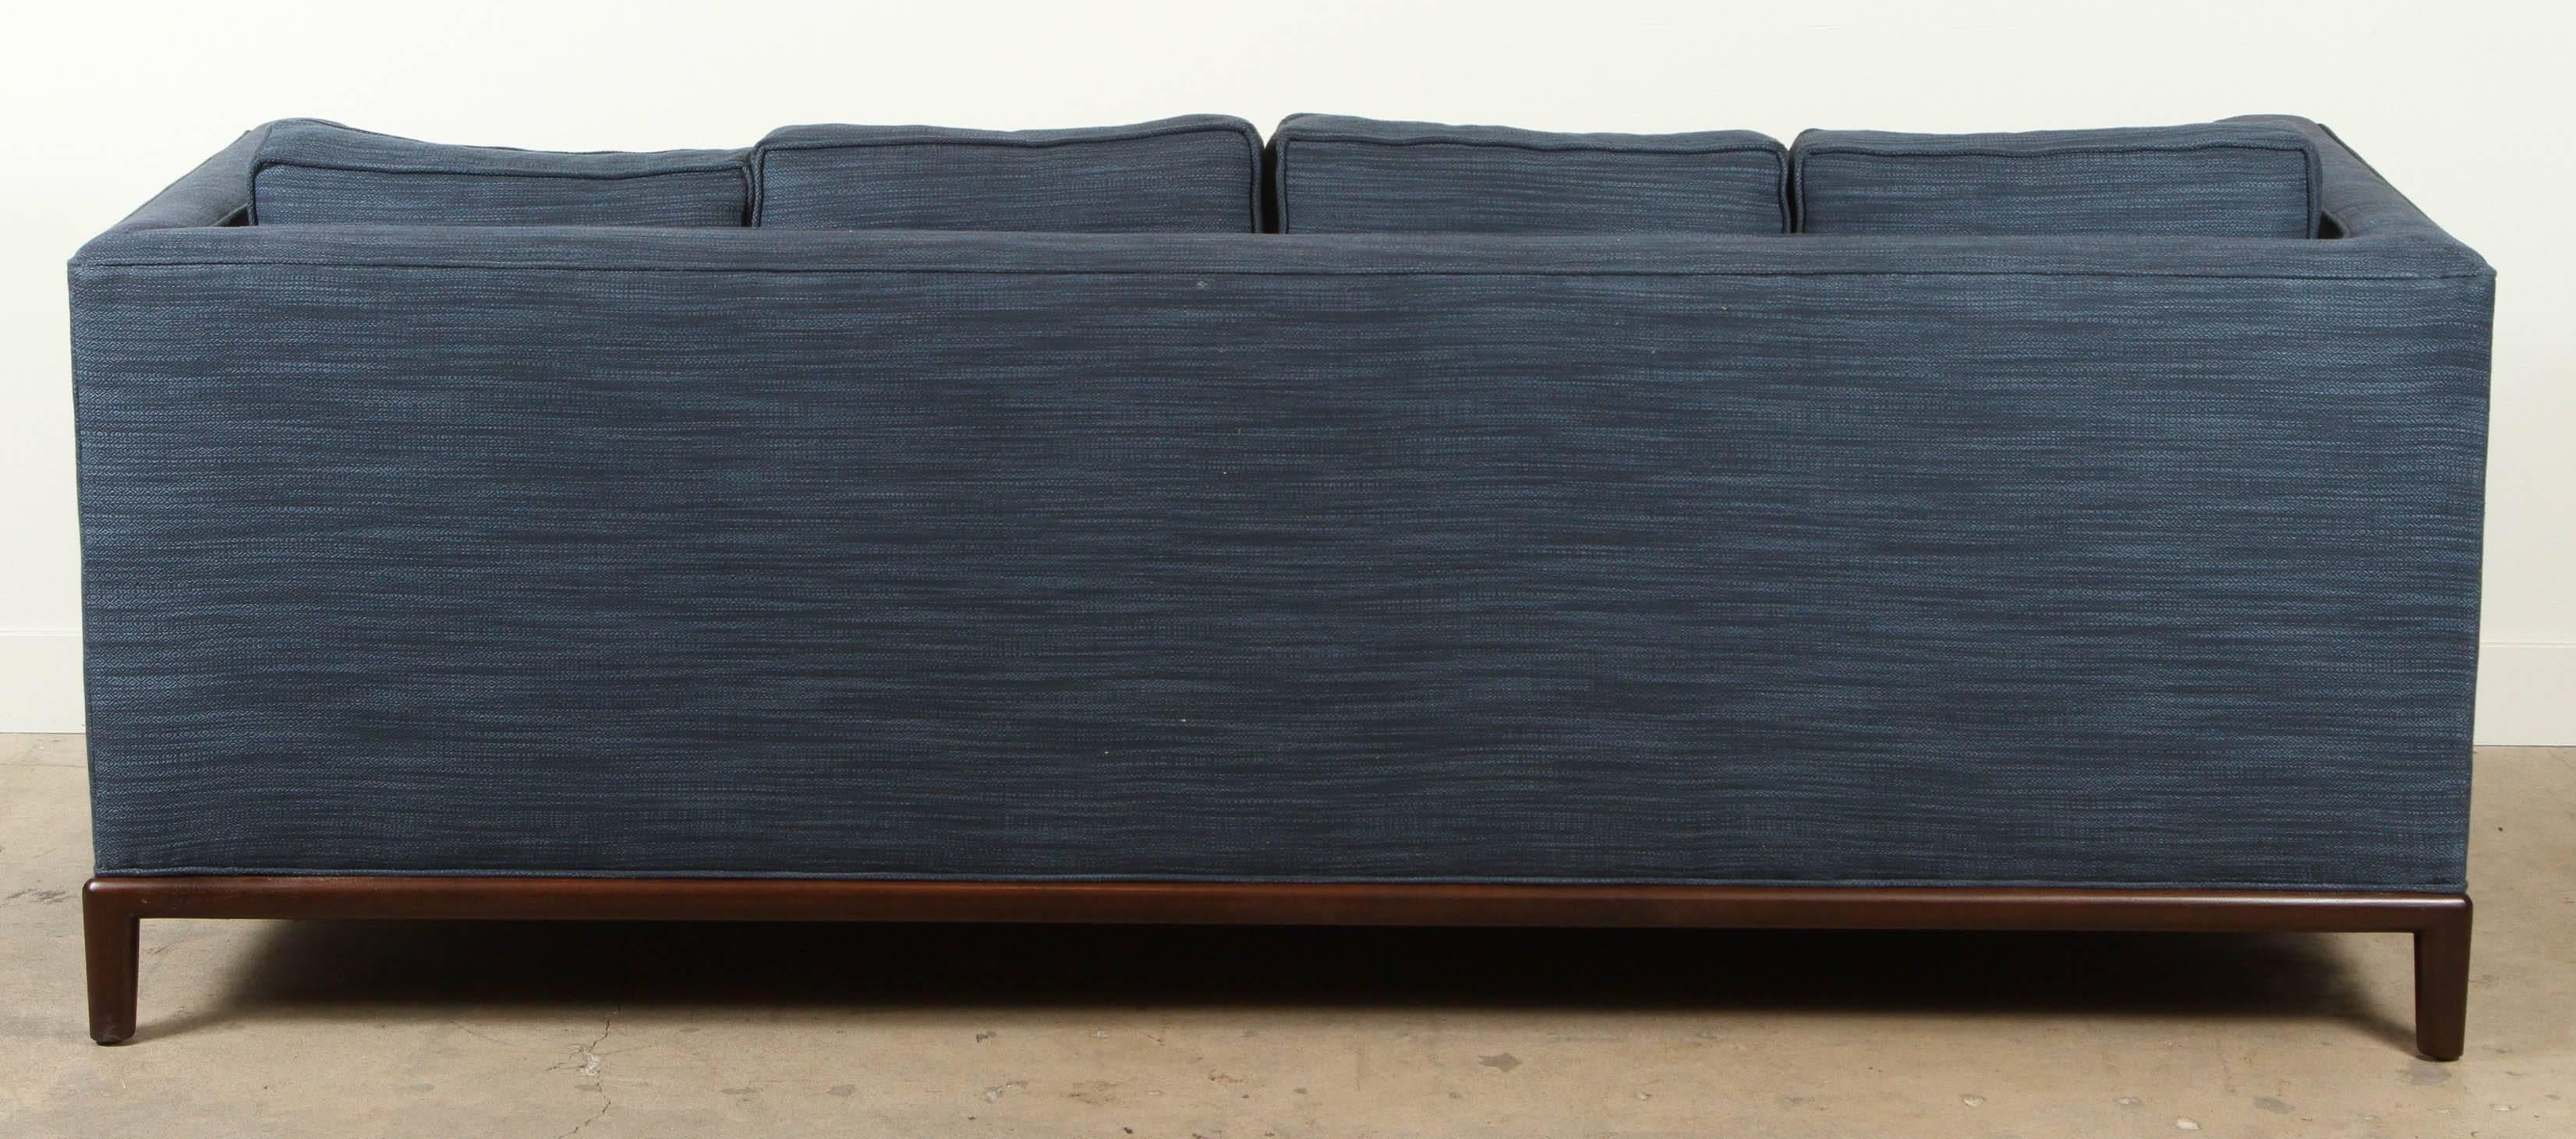 Contemporary Montebello Sofa by Lawson-Fenning in Zak + Fox Fabric